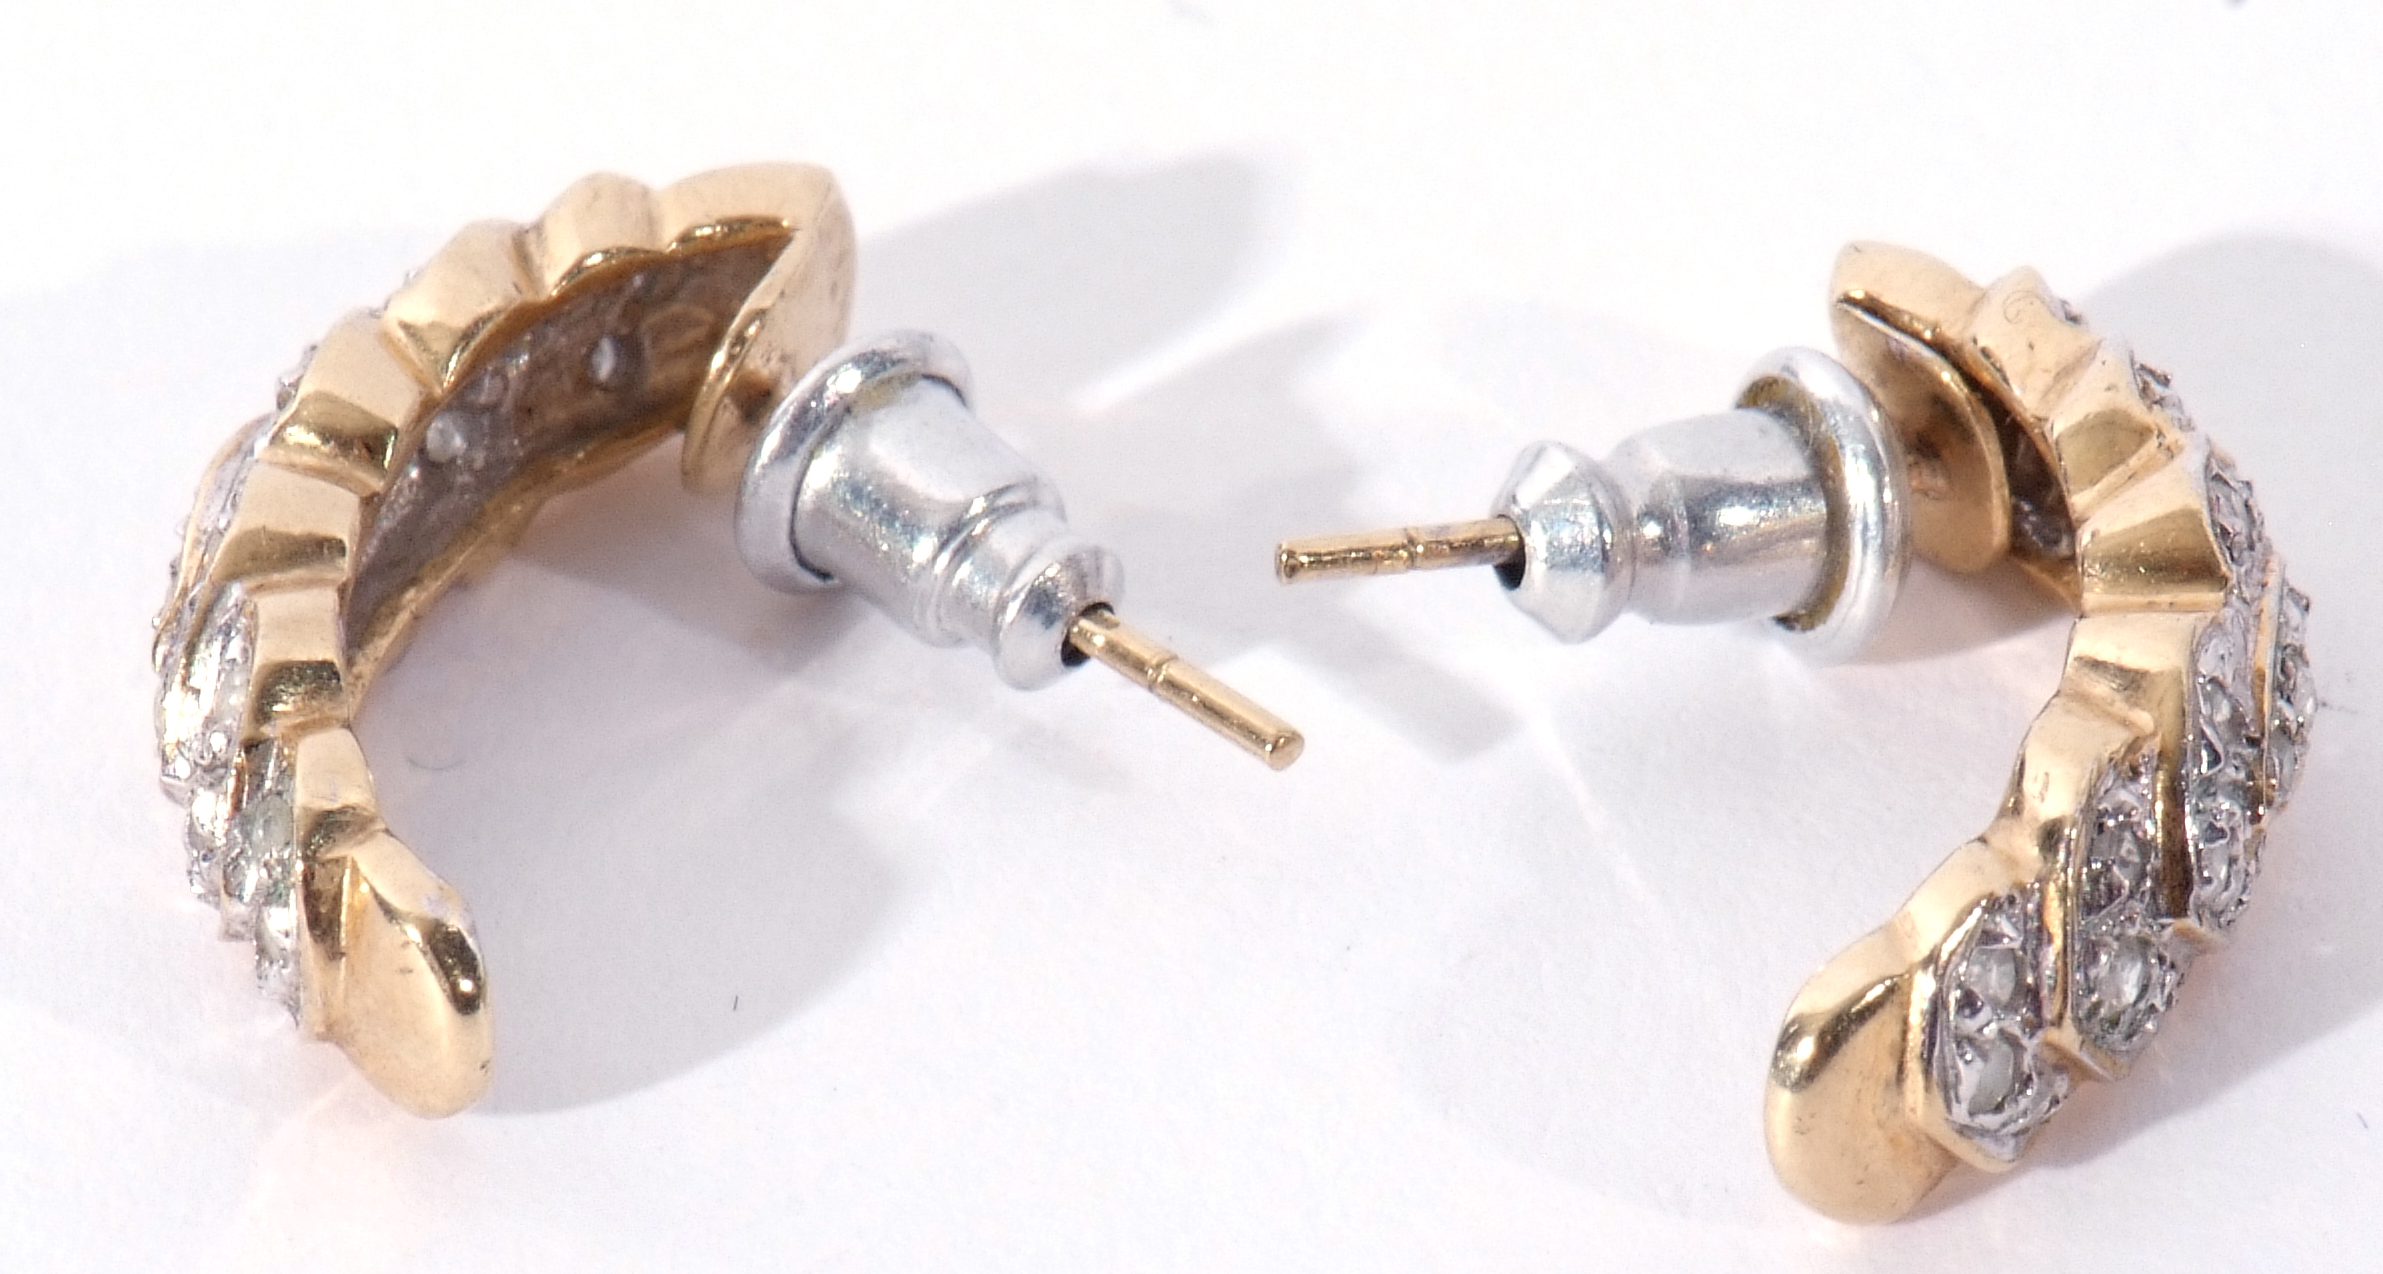 Pair of 9ct gold diamond set half hoop earrings, post fittings - Image 5 of 6